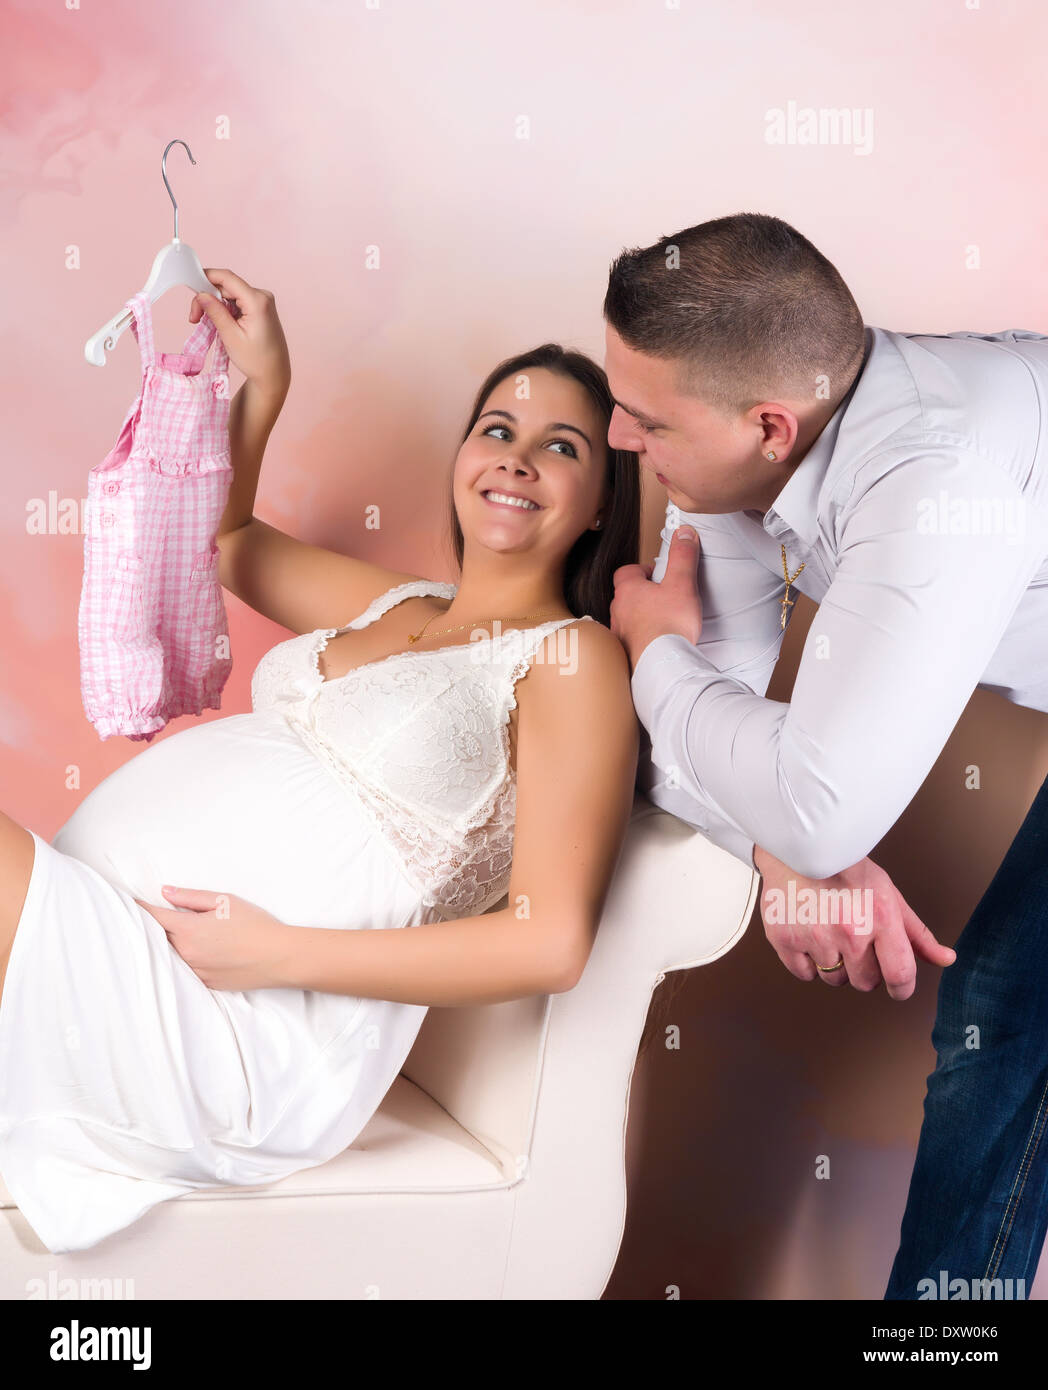 Embarazada ropa fotografías e imágenes de alta resolución - Página 3 - Alamy